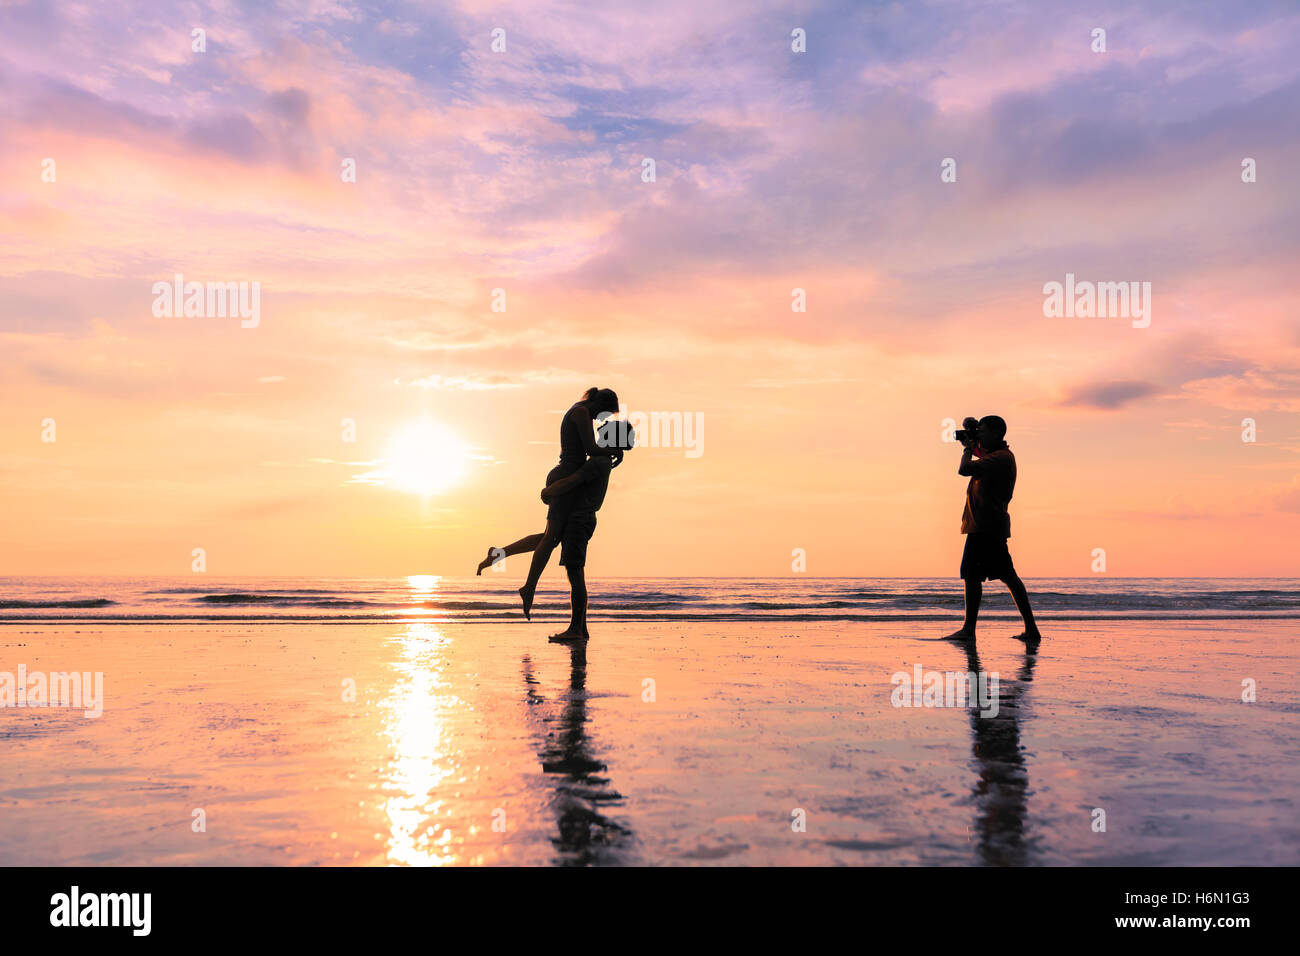 Fotografen nehmen Foto von ein paar küssen am Strand bei Sonnenuntergang - Konzept über romantische Reisen und Flitterwochen Stockfoto